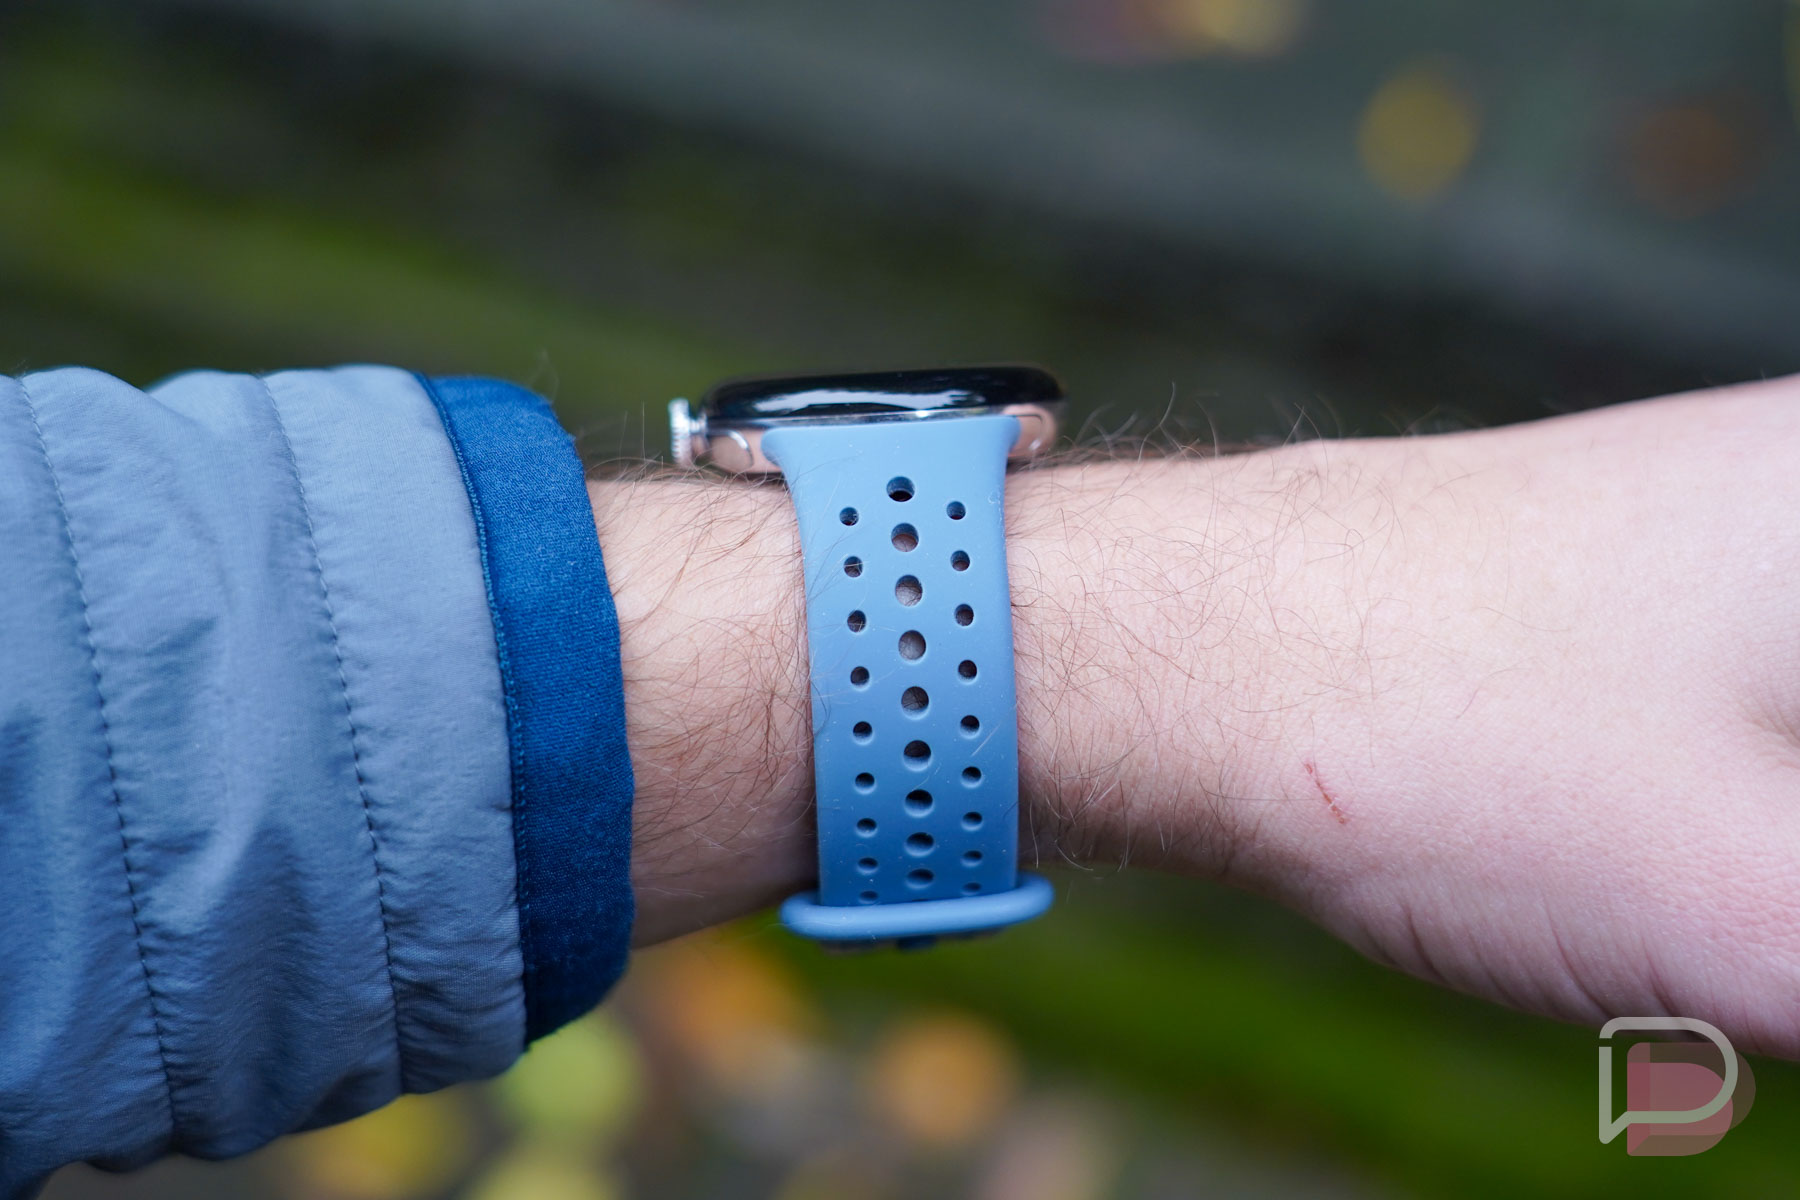 Pixel Watch 2 - Wearing